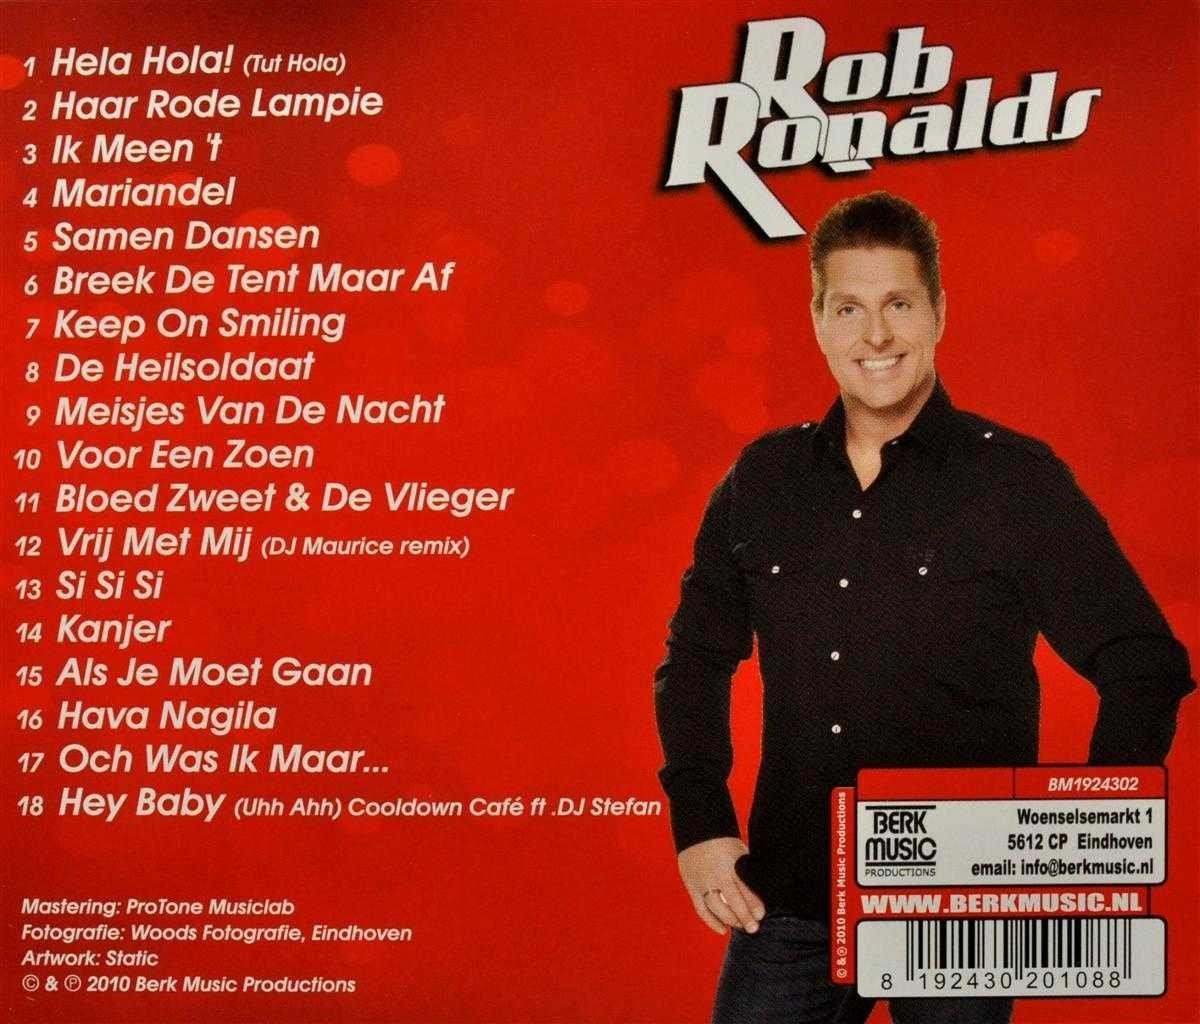 Rob Ronalds - Het Beste Van (10 Jaar) (CD), Rob Ronalds | CD (album) |  Muziek | bol.com